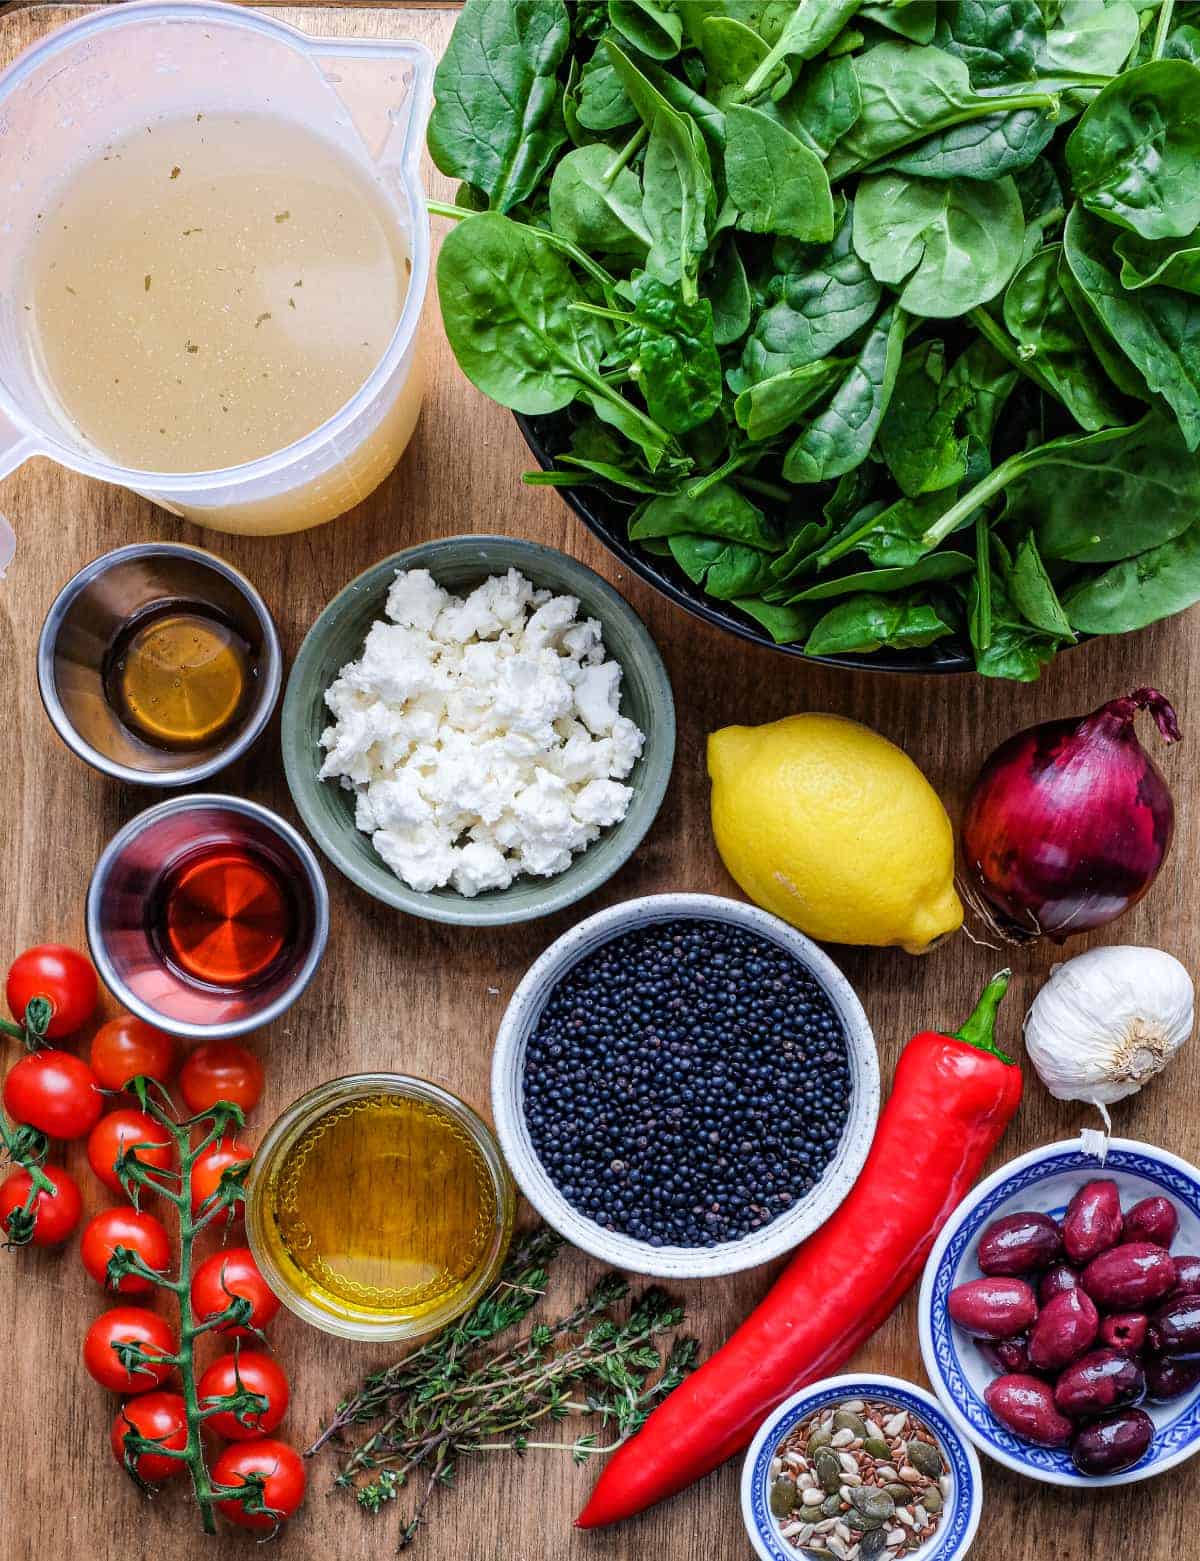 Ingredients for a Greek lentil salad: lentils, spinach, garlic, feta, tomato, pepper, olives, onion, lemon, vinegar and olive oil